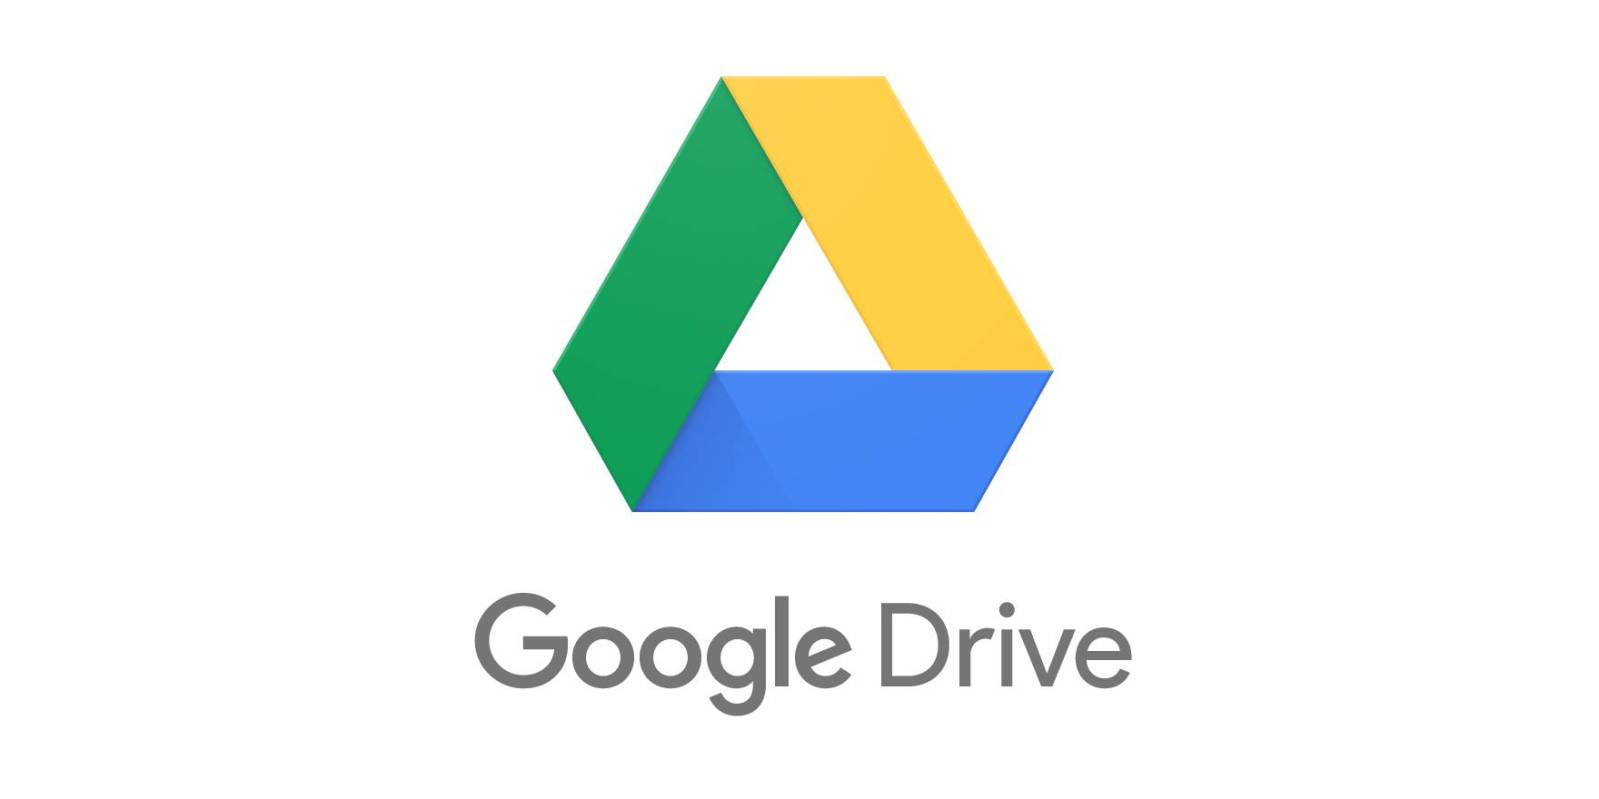 كيف-تقوم-بإستخدام-google-drive-لإنشاء-الملفات-ومشاركتها؟